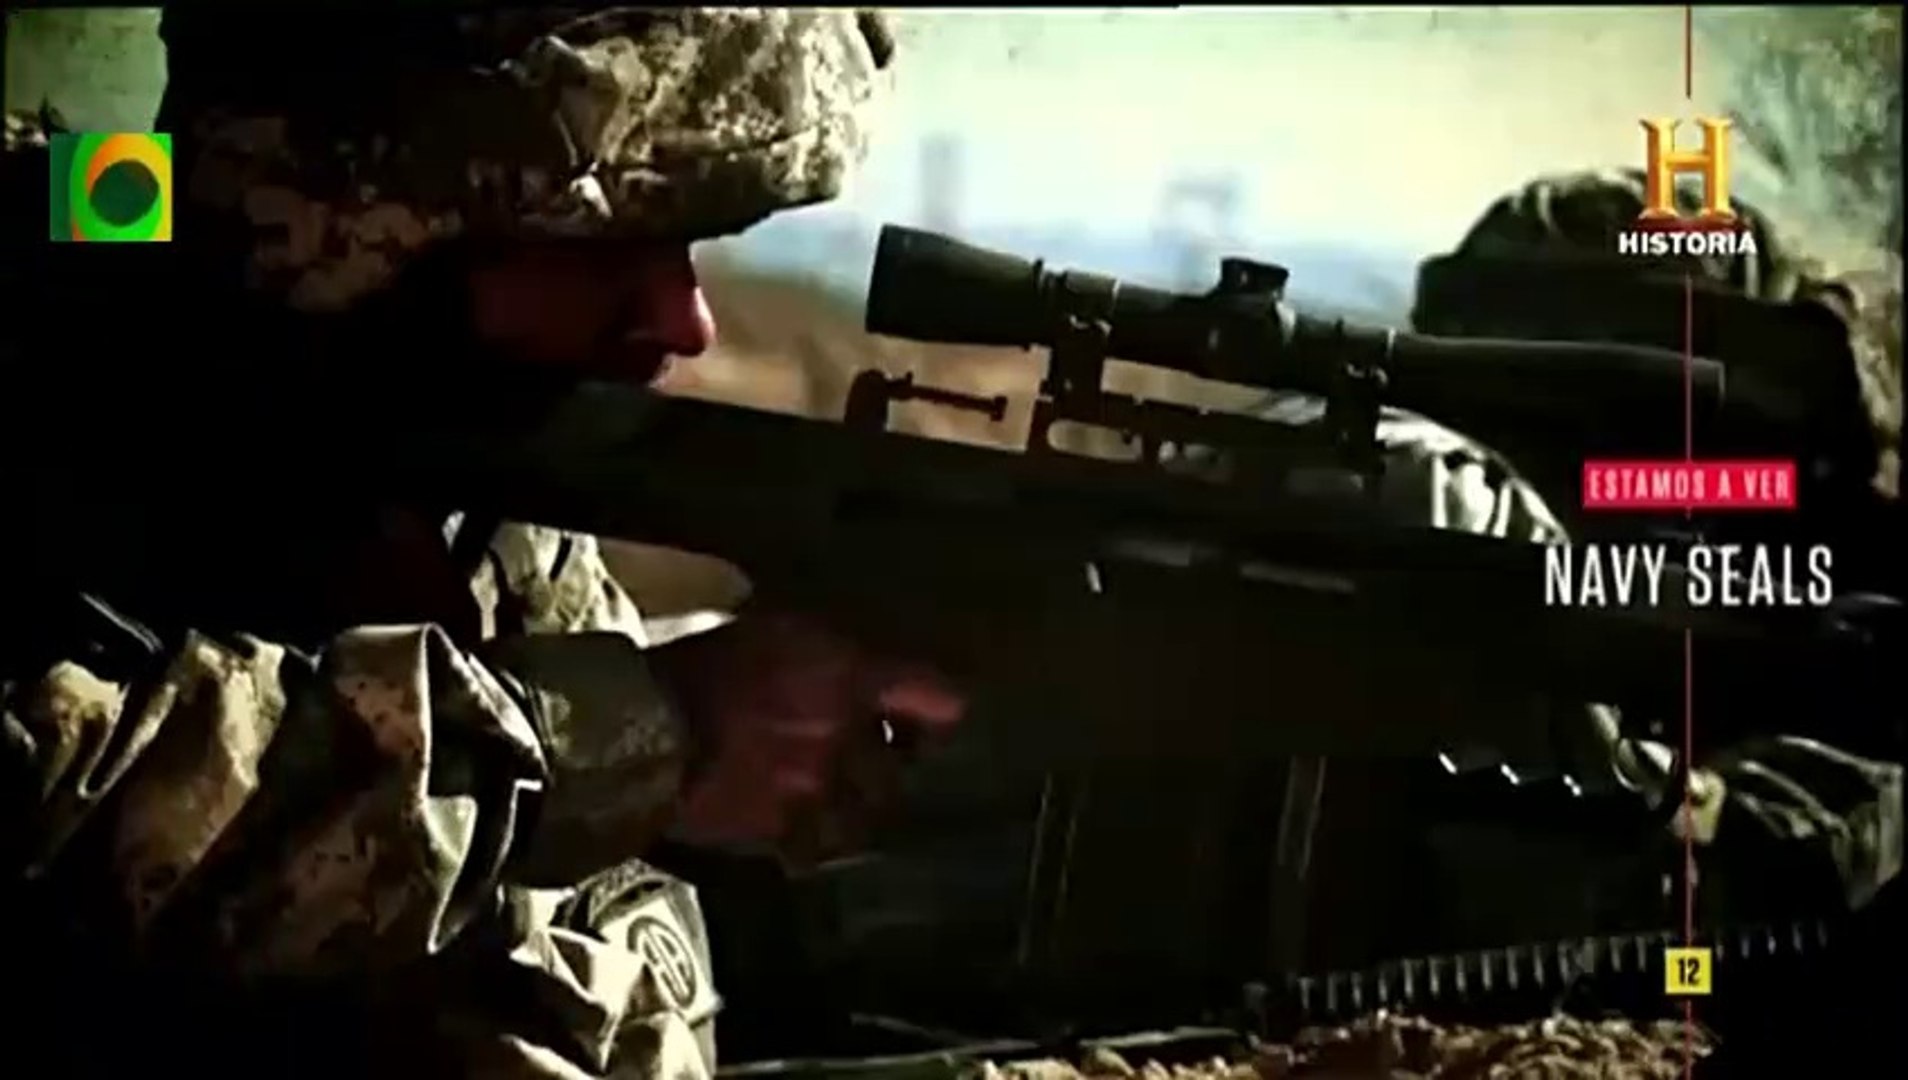 Assista a SEAL Team: Soldados de Elite online